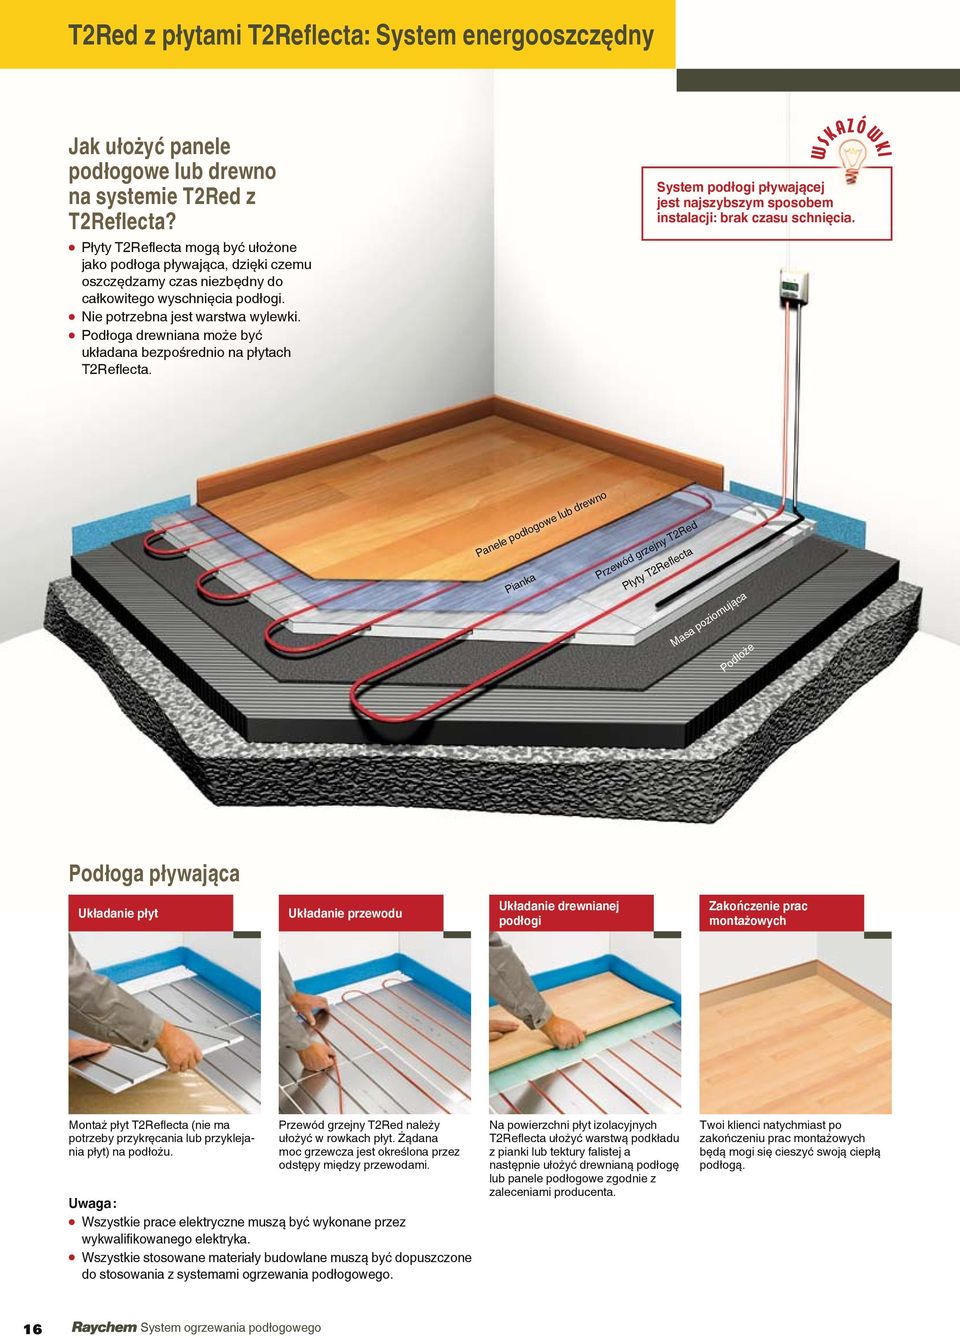 l Podłoga drewniana może być układana bezpośrednio na płytach T2Reflecta. WSKAZÓWKI System podłogi pływającej jest najszybszym sposobem instalacji: brak czasu schnięcia.